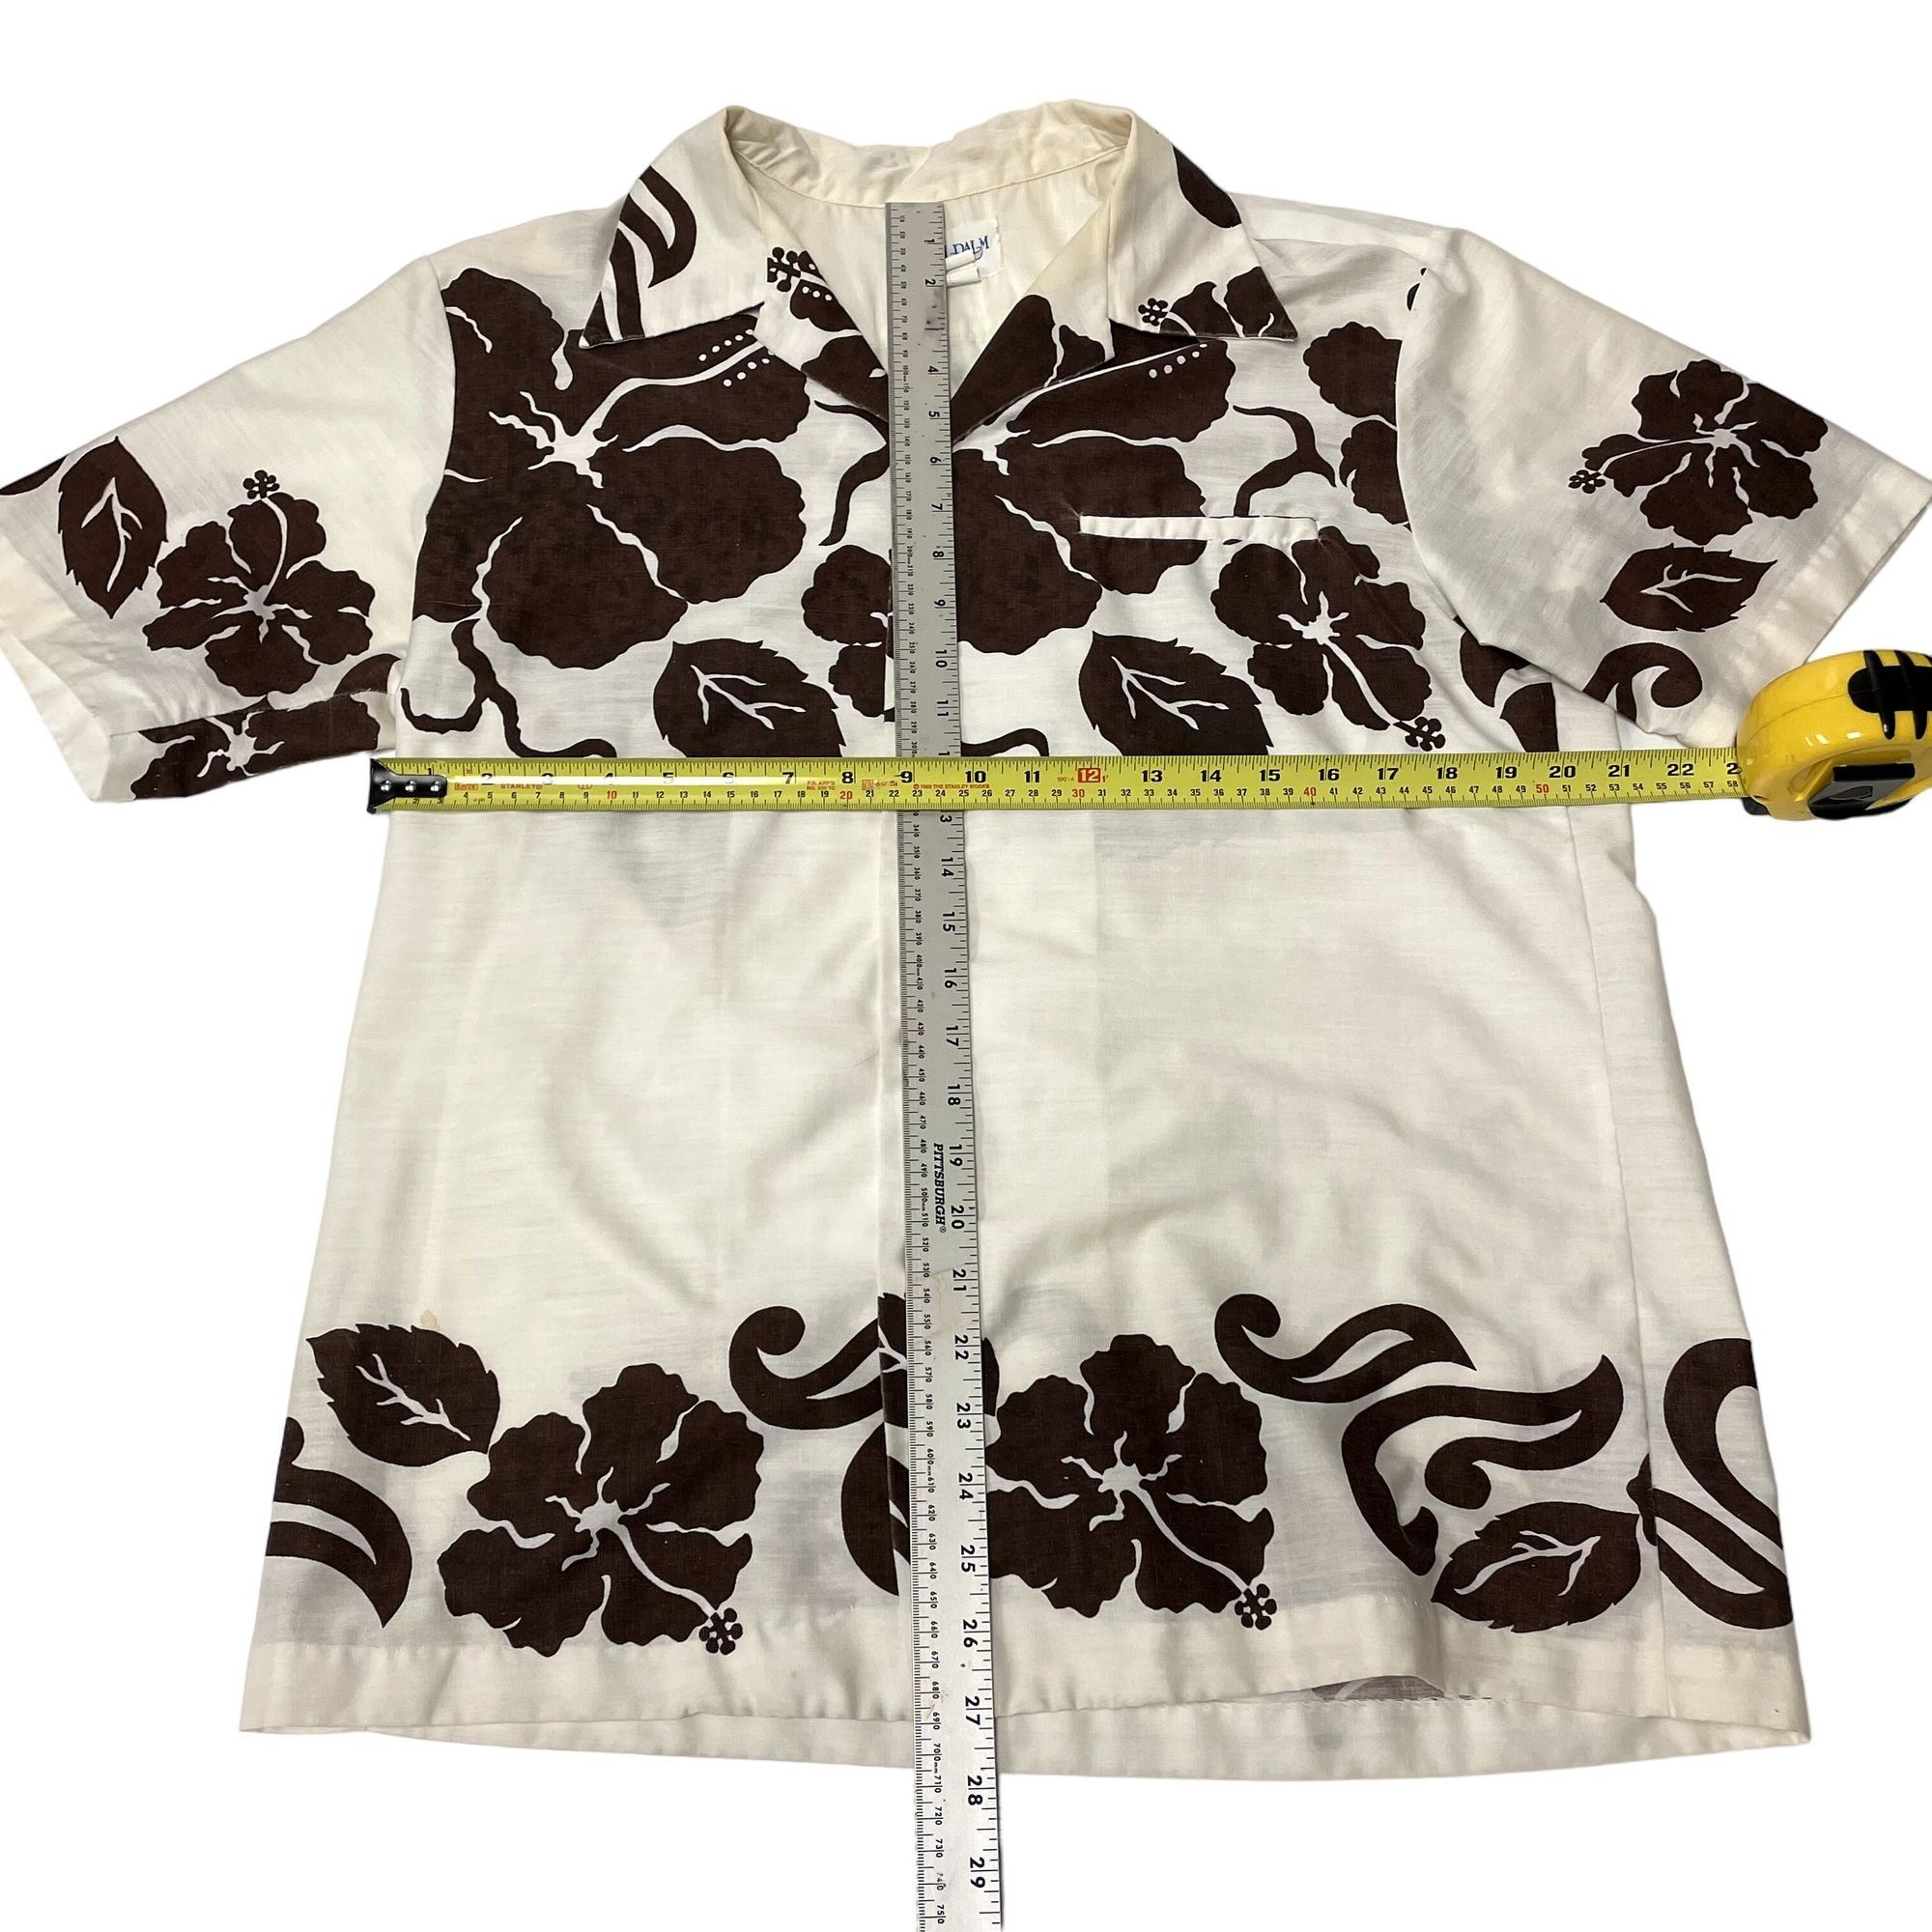 Unkwn 70s Royal Palm MOD White Brown FLORAL Butterfly Collar Shirt Size US L / EU 52-54 / 3 - 6 Thumbnail